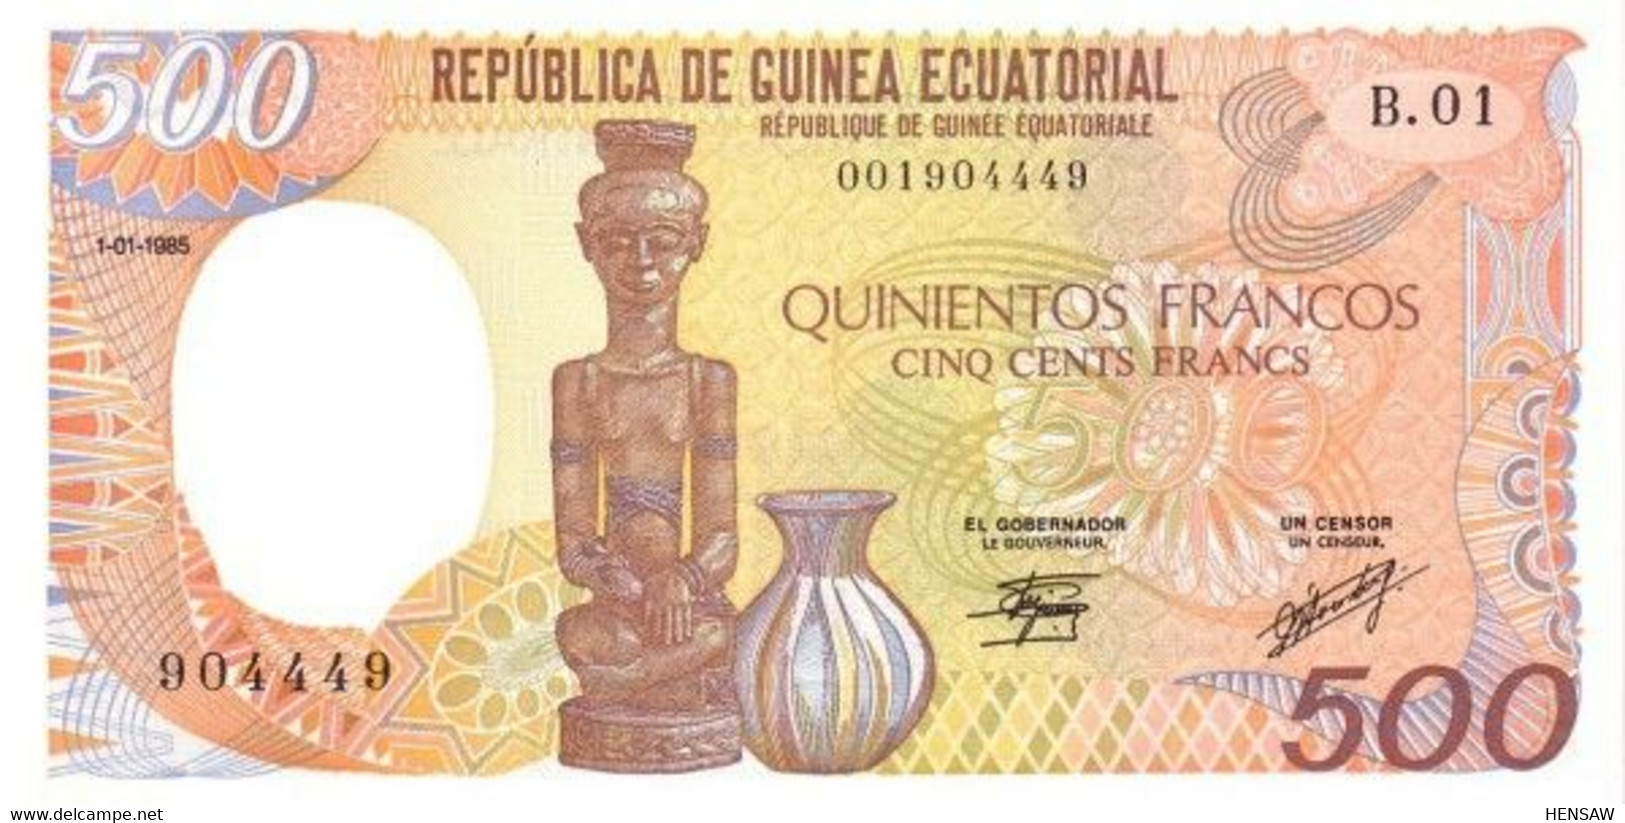 EQUATORIAL GUINEA 500 FRANCS 1985 P 20 UNC SC NUEVO - Equatorial Guinea